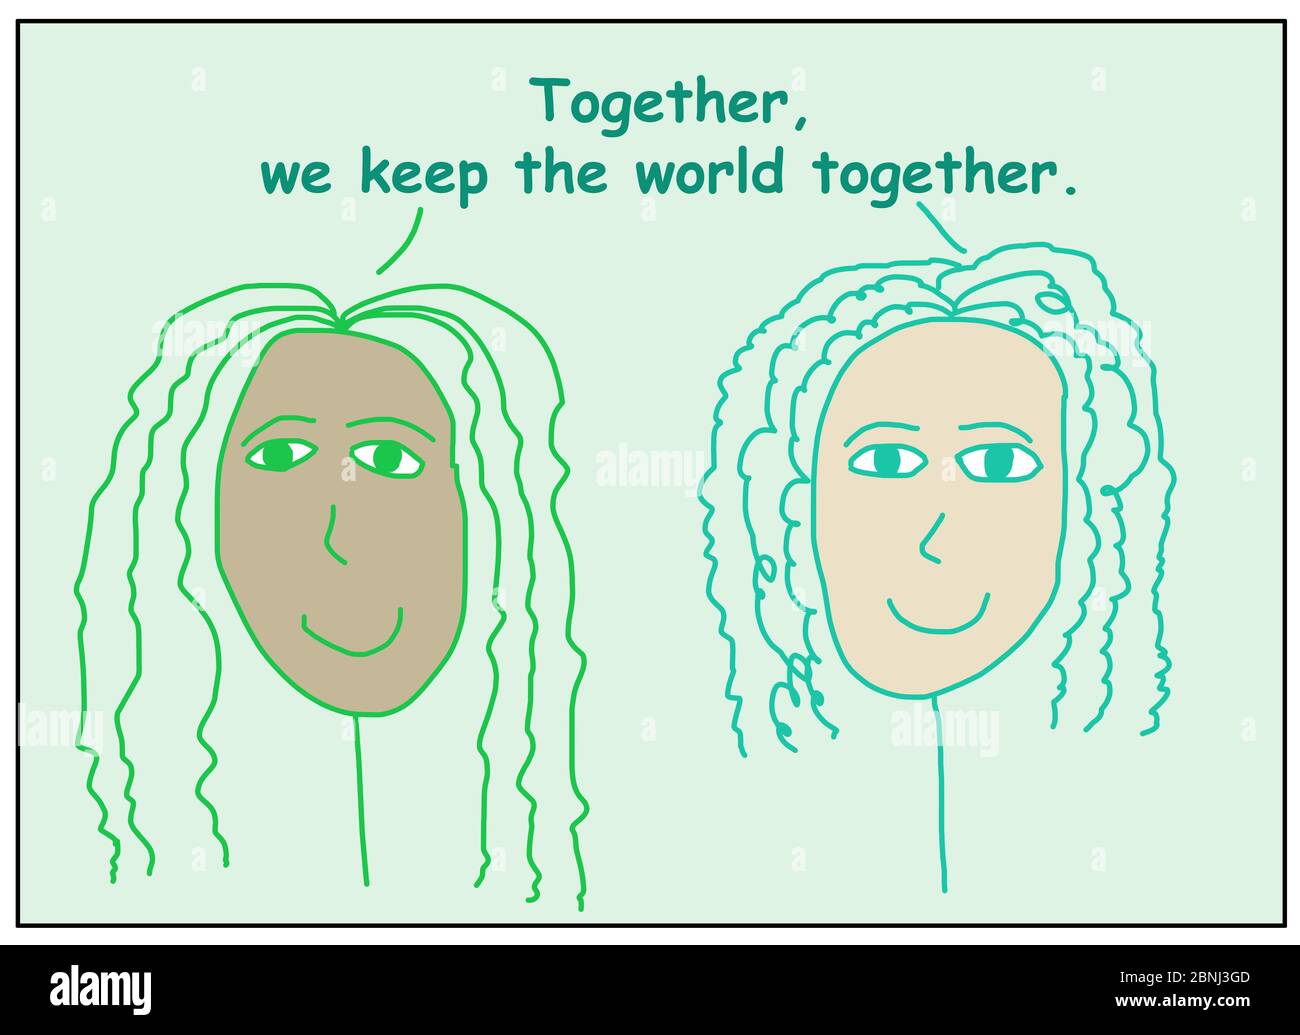 Farbzeichentrick von zwei lächelnden und ethnisch unterschiedlichen Frauen sagen, dass zusammen, wir halten die Welt zusammen. Stockfoto